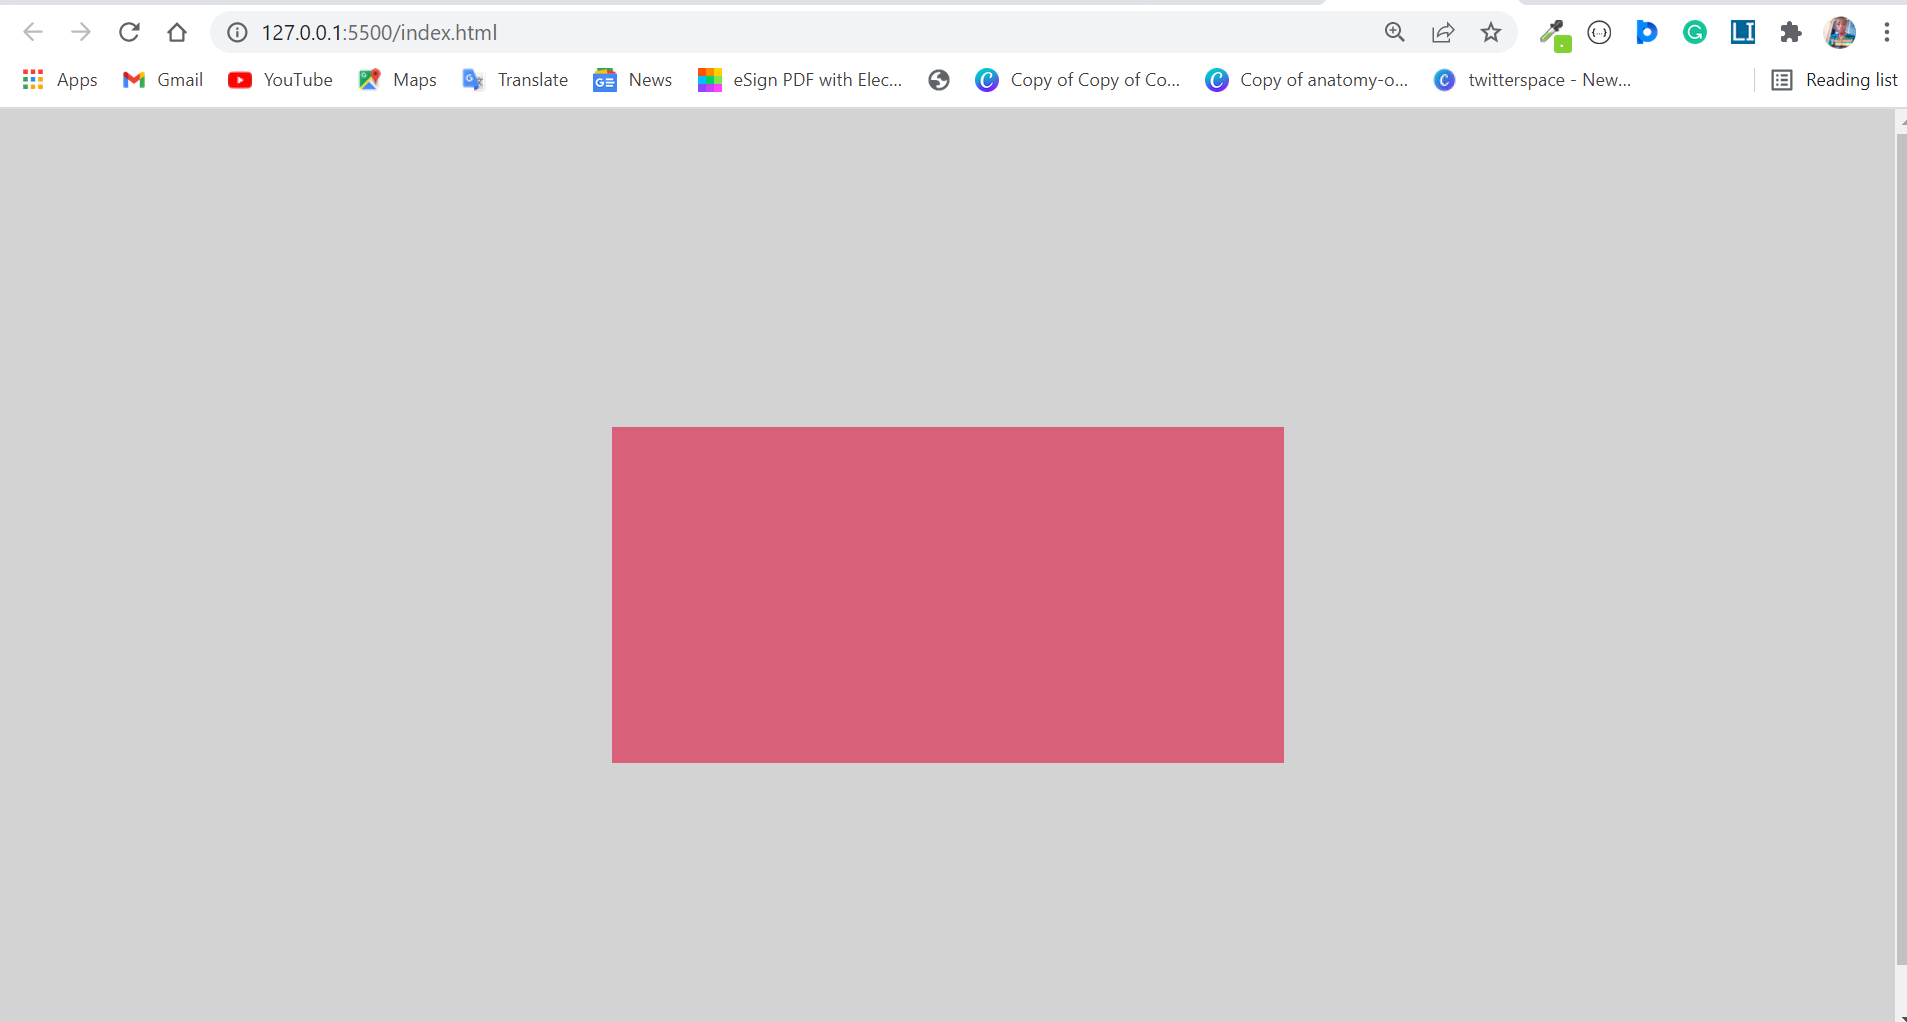 Bạn muốn tìm hiểu cách làm nền trang web màu sắc và hấp dẫn hơn? Trang CSS này chính là lựa chọn hoàn hảo dành cho bạn. Hãy xem qua các video hướng dẫn về div và background color để tùy biến trang web của bạn theo phong cách riêng.